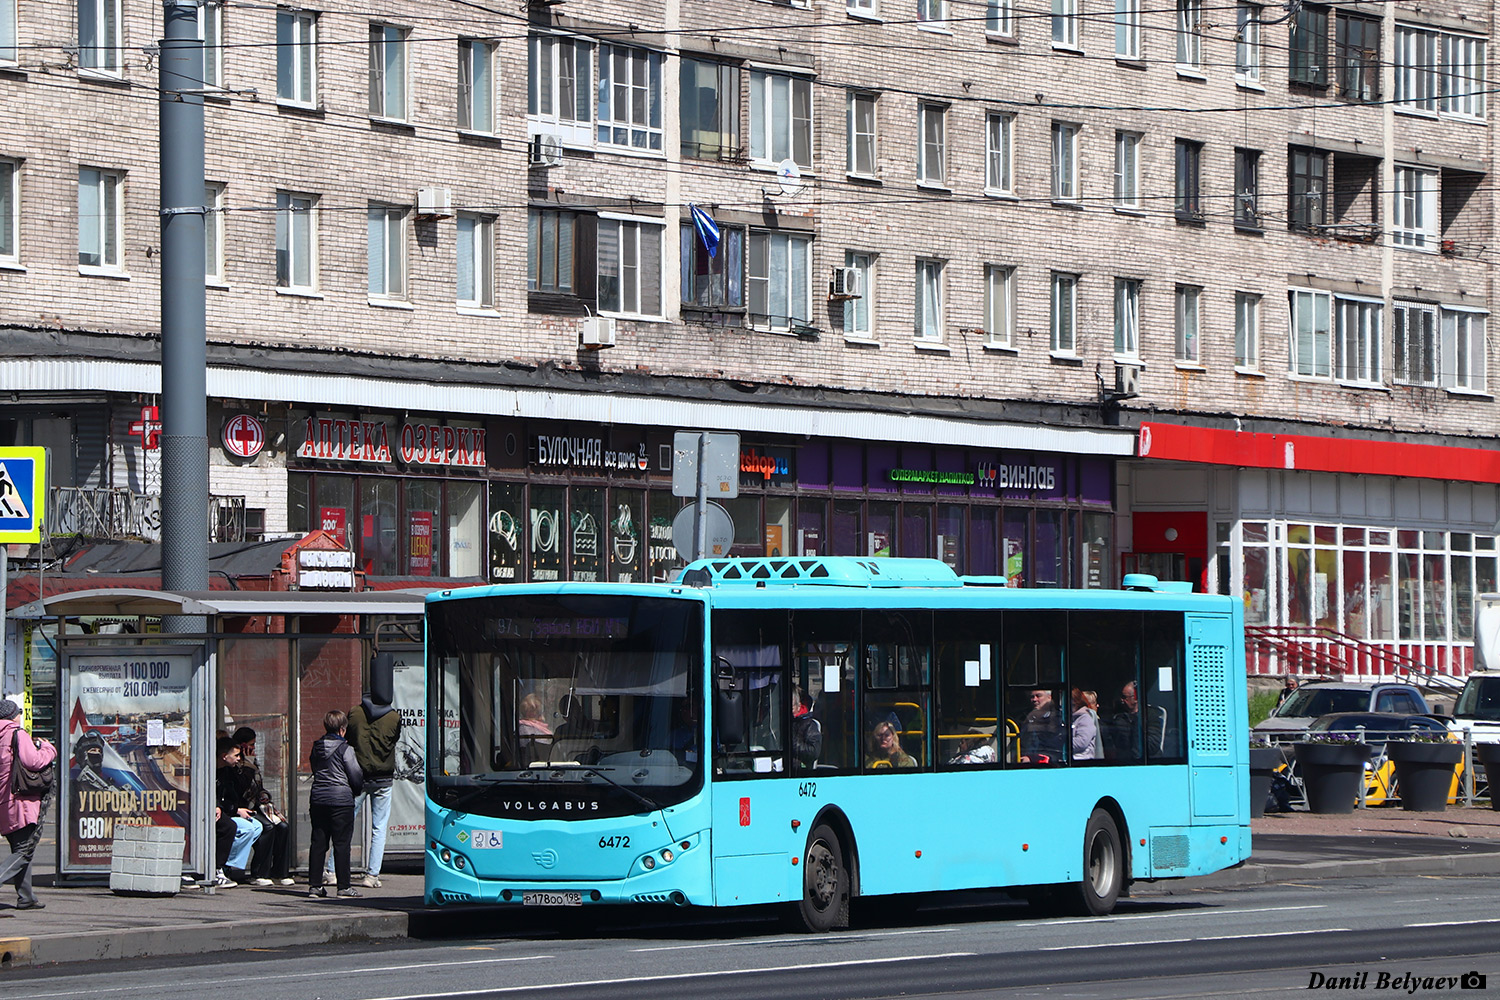 Sankt Peterburgas, Volgabus-5270.G2 (LNG) Nr. 6472